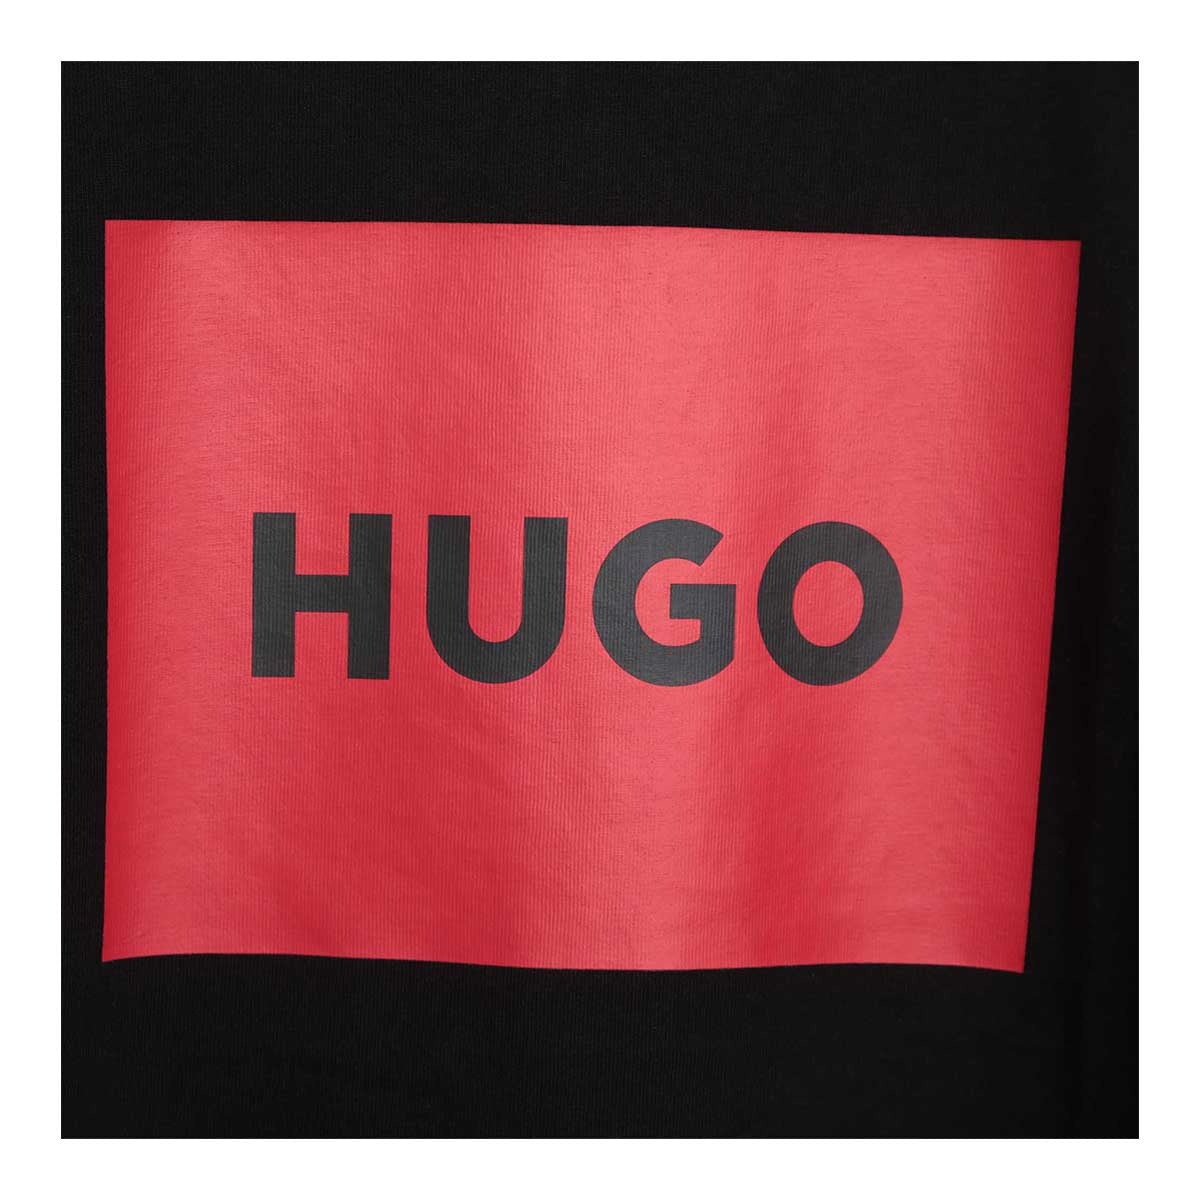 חולצת טי שרט HUGO לוגו בריבוע לילדים